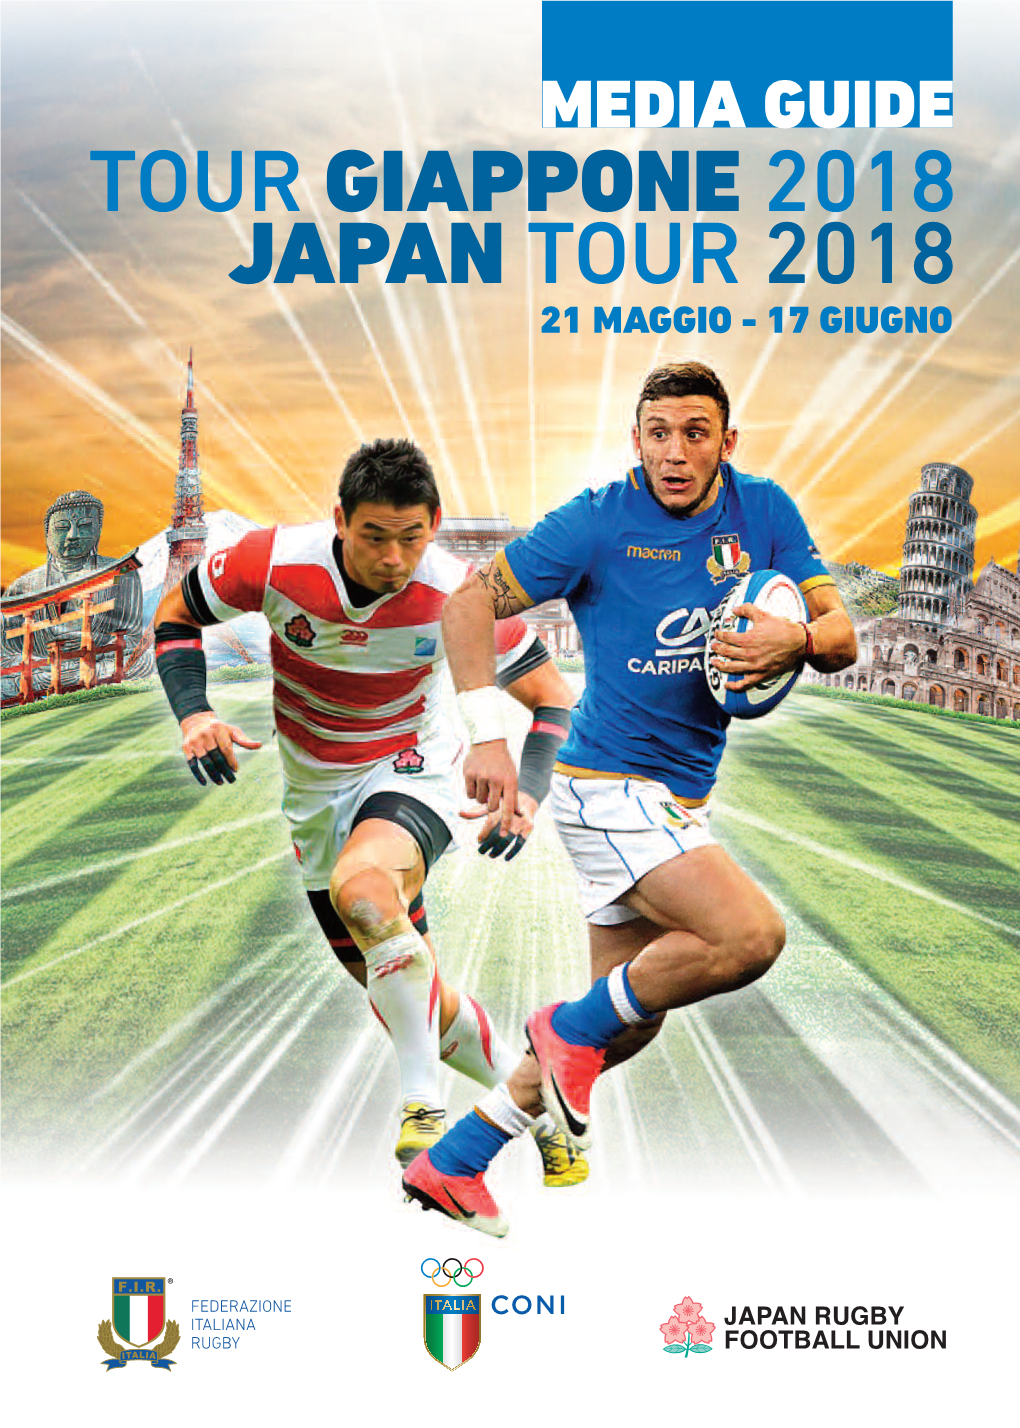 Tour Giappone 2018 Japan Tour 2018 21 Maggio - 17 Giugno Seguici Su